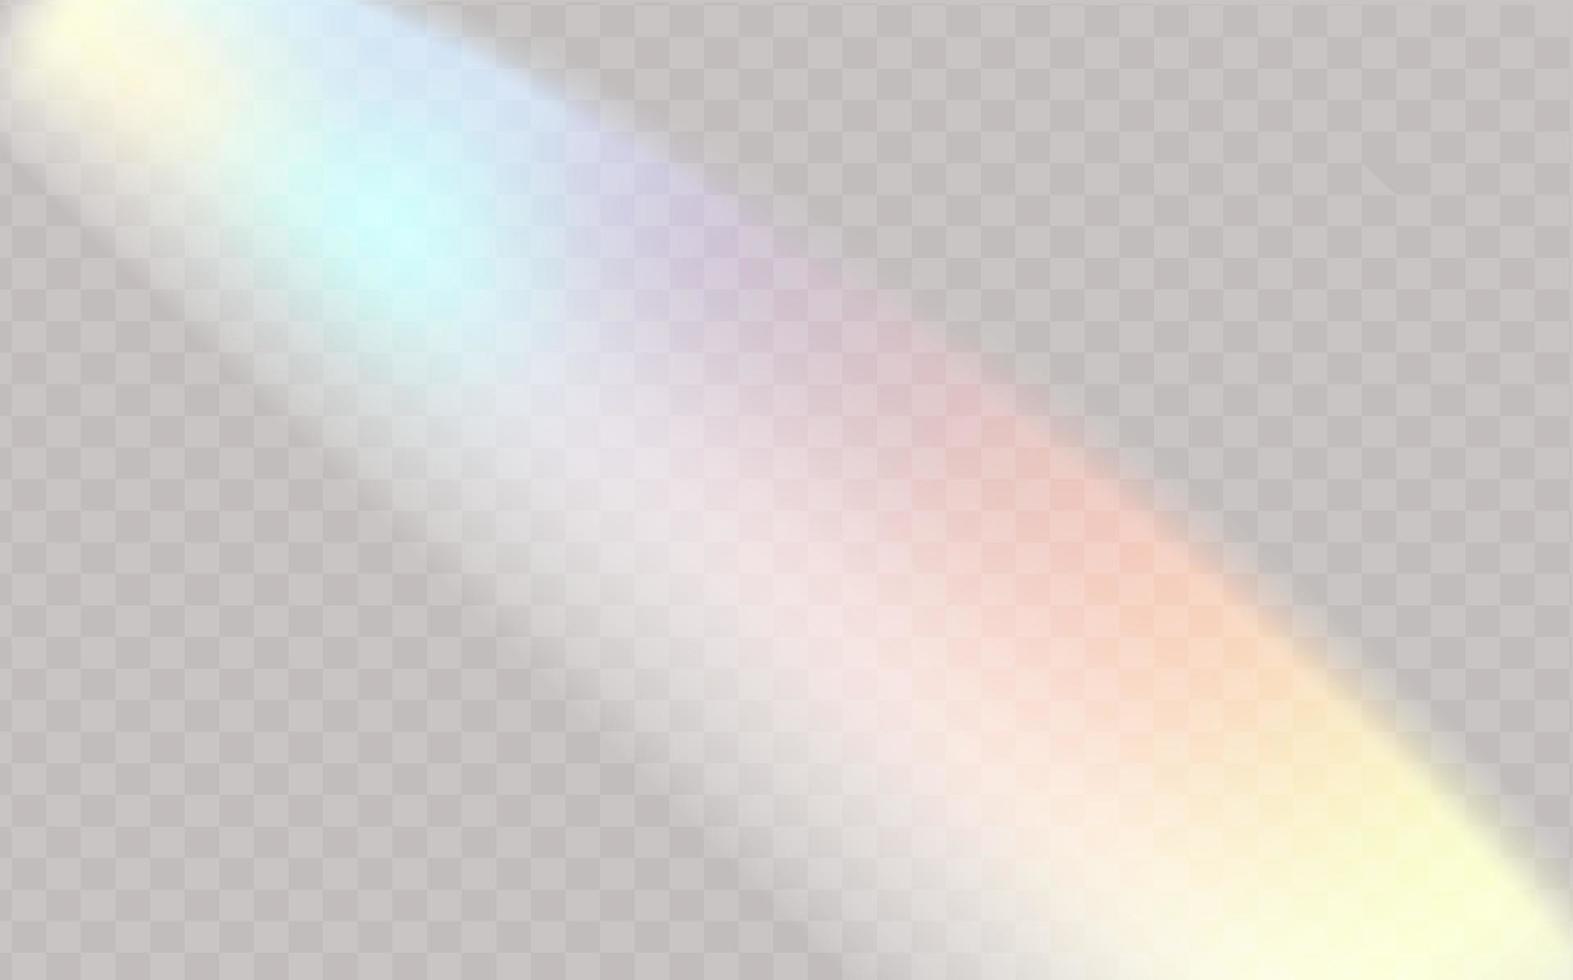 en uppsättning av färgrik vektor lins, kristall regnbåge ljus och blossa transparent effekter.överlägg för bakgrunder.triangulära prisma begrepp.